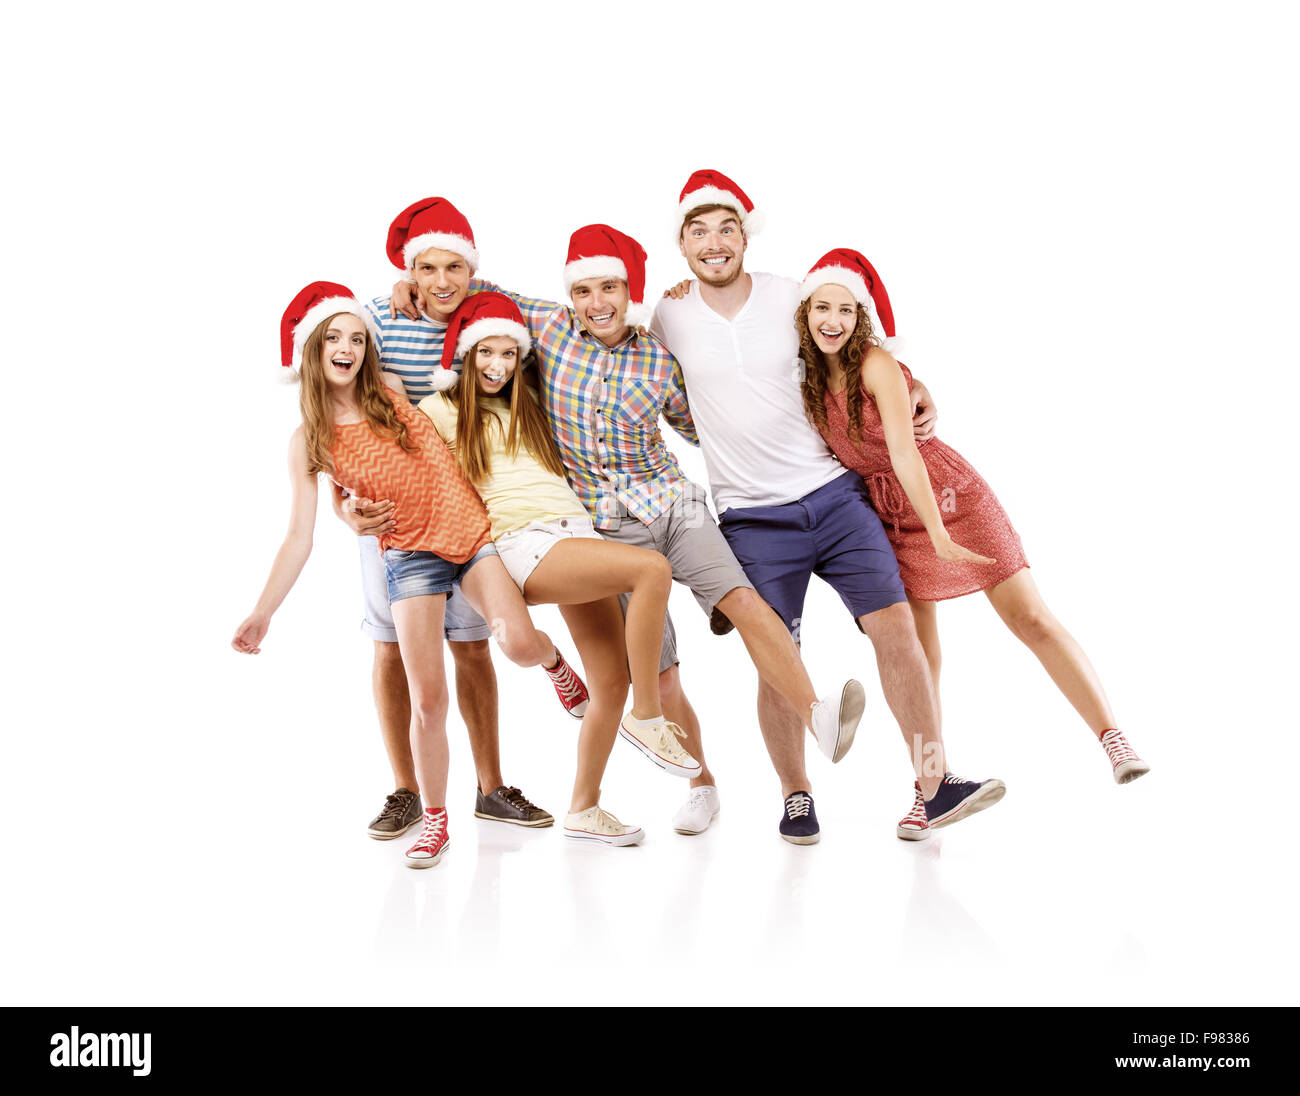 Gruppe von Jugendlichen in Santa Hüte Spaß, isoliert auf weißem Hintergrund Stockfoto